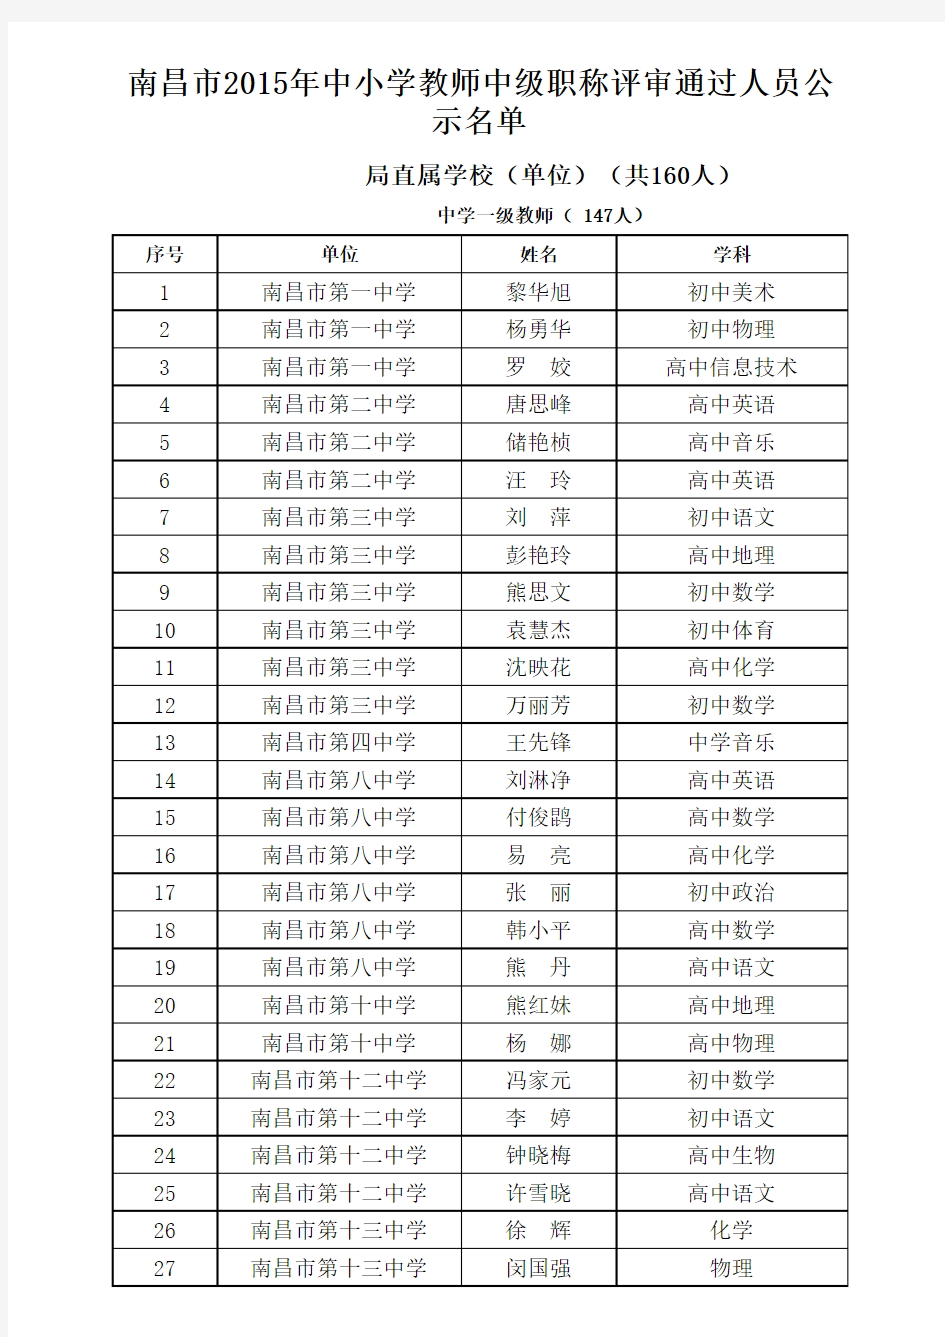 南昌市2015年中小学教师中级职称评审通过人员公示名单